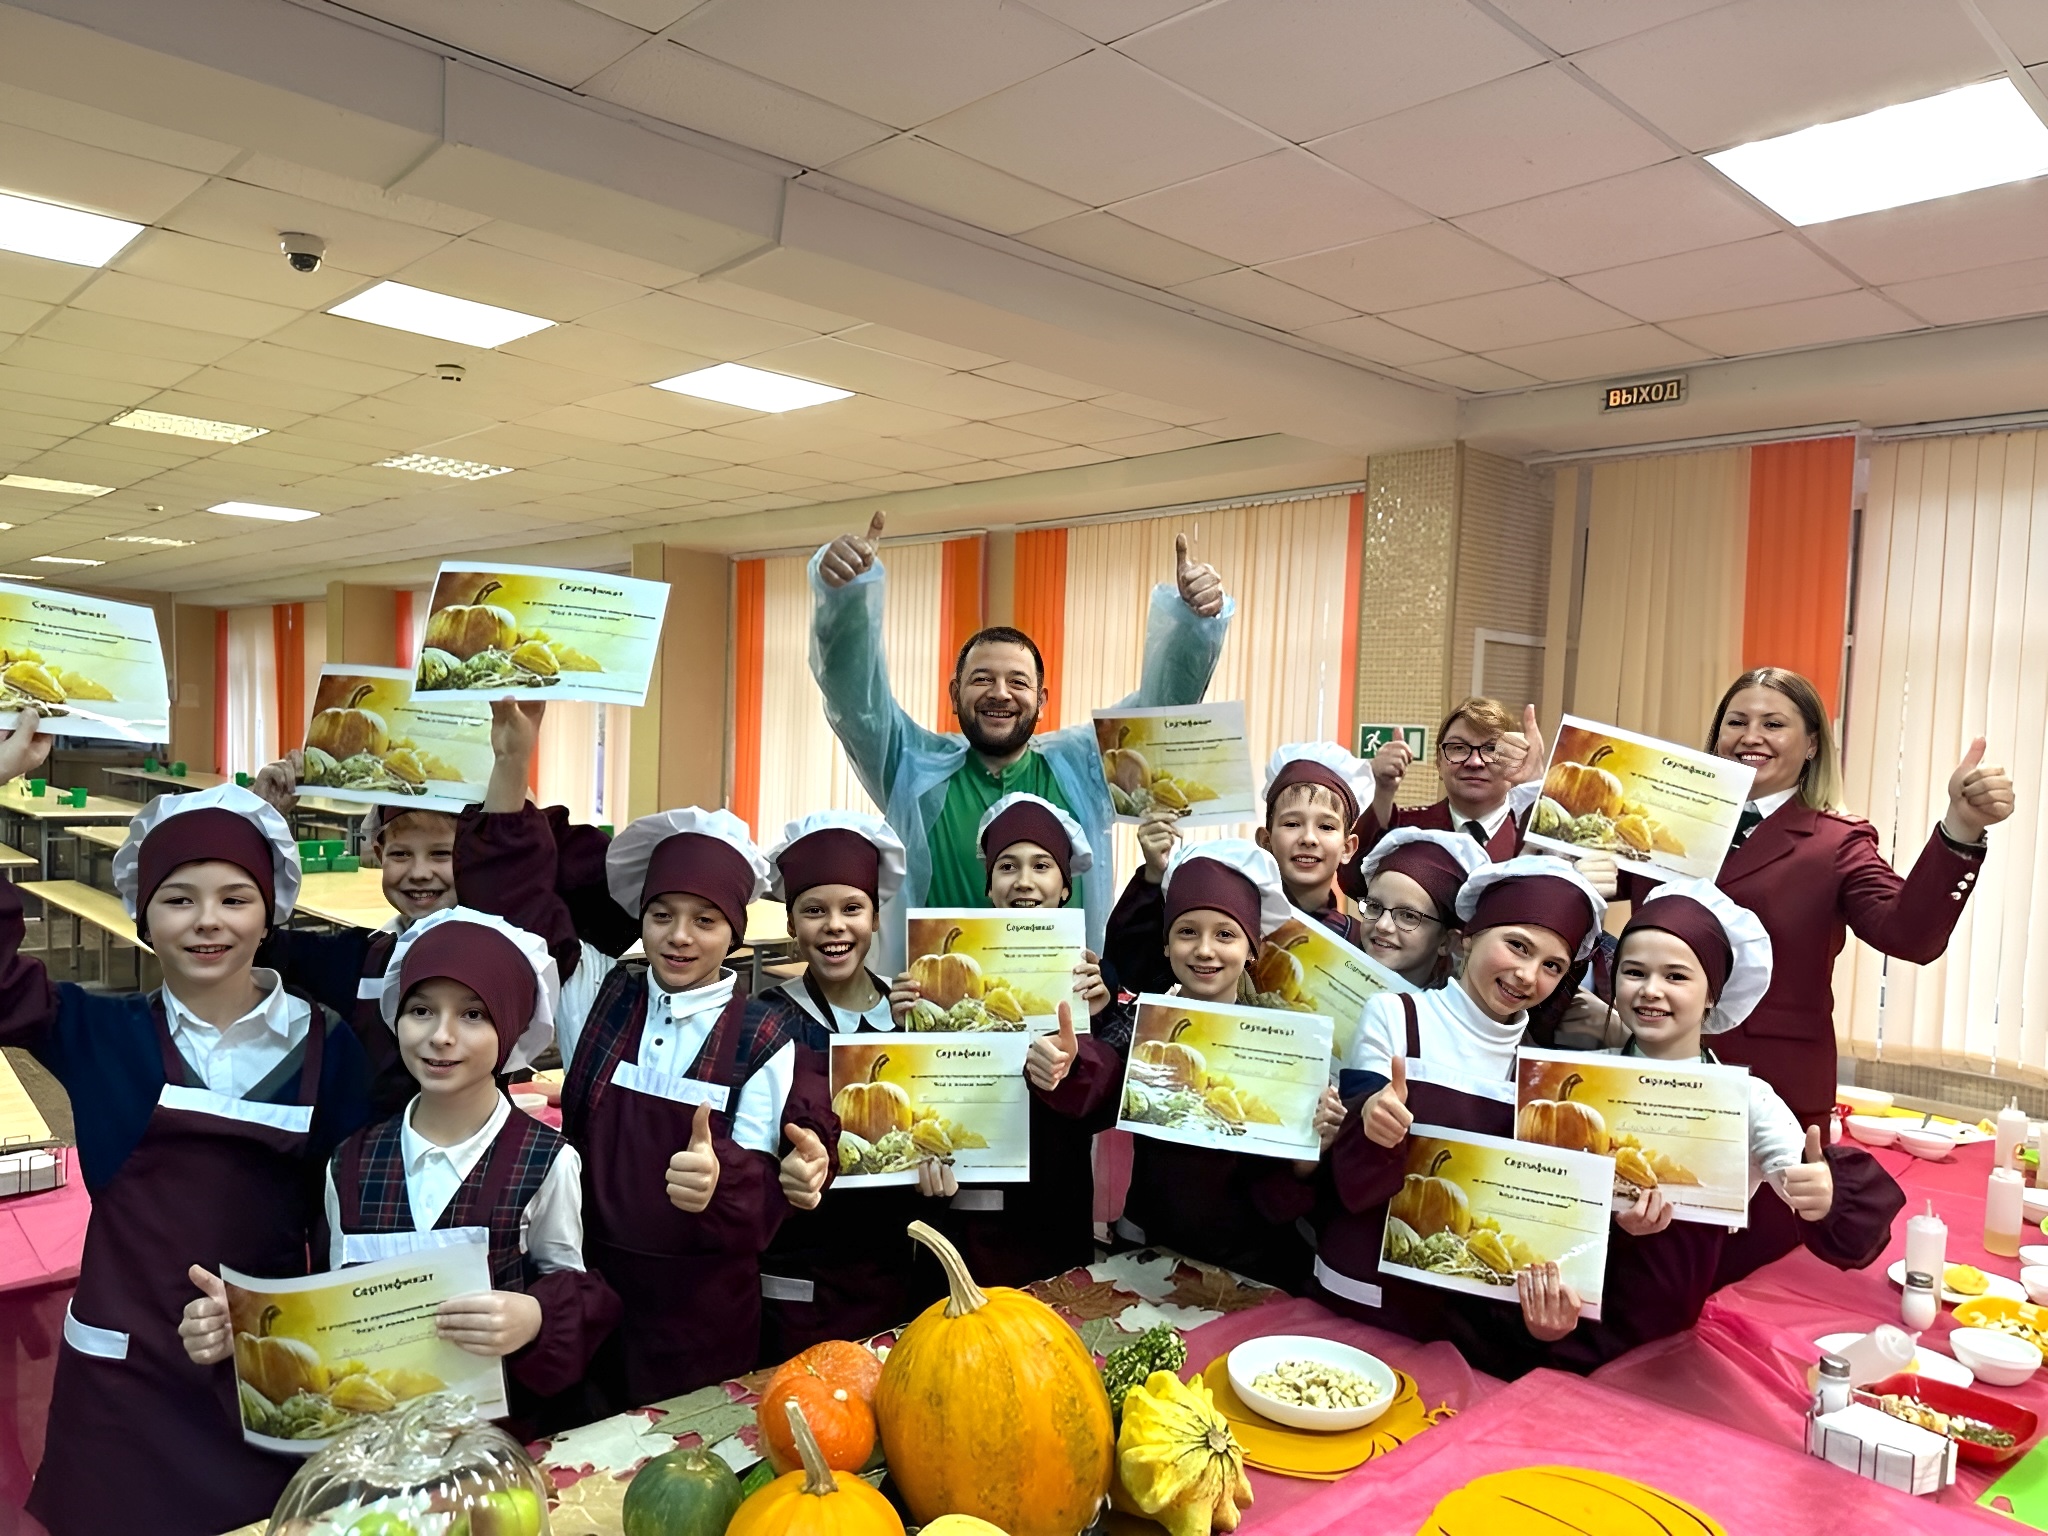 Комбинат питания ЮАО пригласил школьников на кулинарный мастер-класс по приготовлению полезных блюд из тыквы, фото